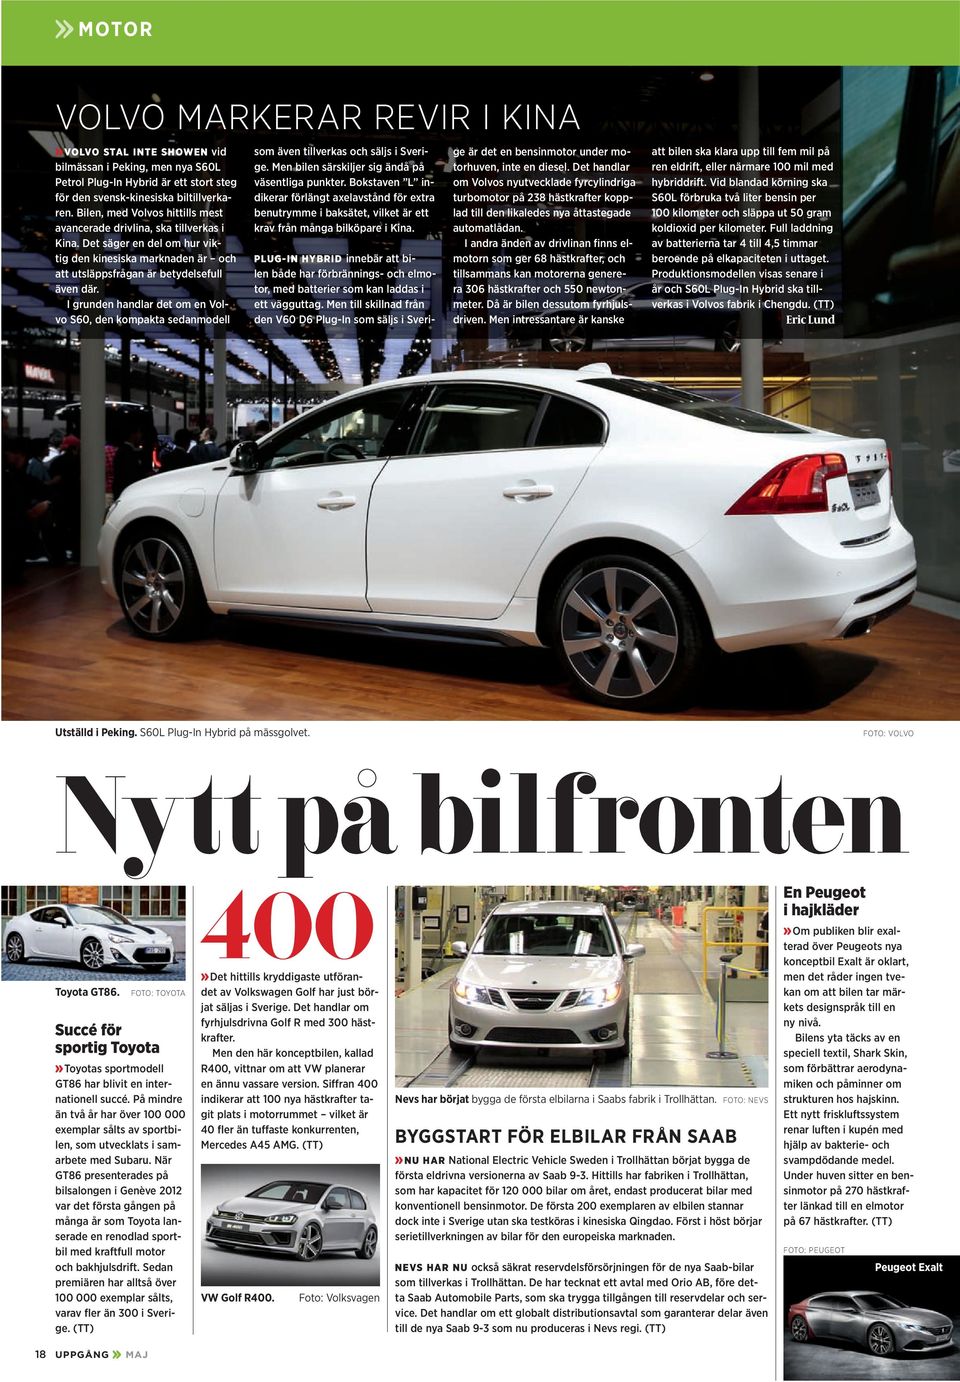 I grunden handlar det om en Volvo S60, den kompakta sedanmodell som även tillverkas och säljs i Sverige. Men bilen särskiljer sig ändå på väsentliga punkter.